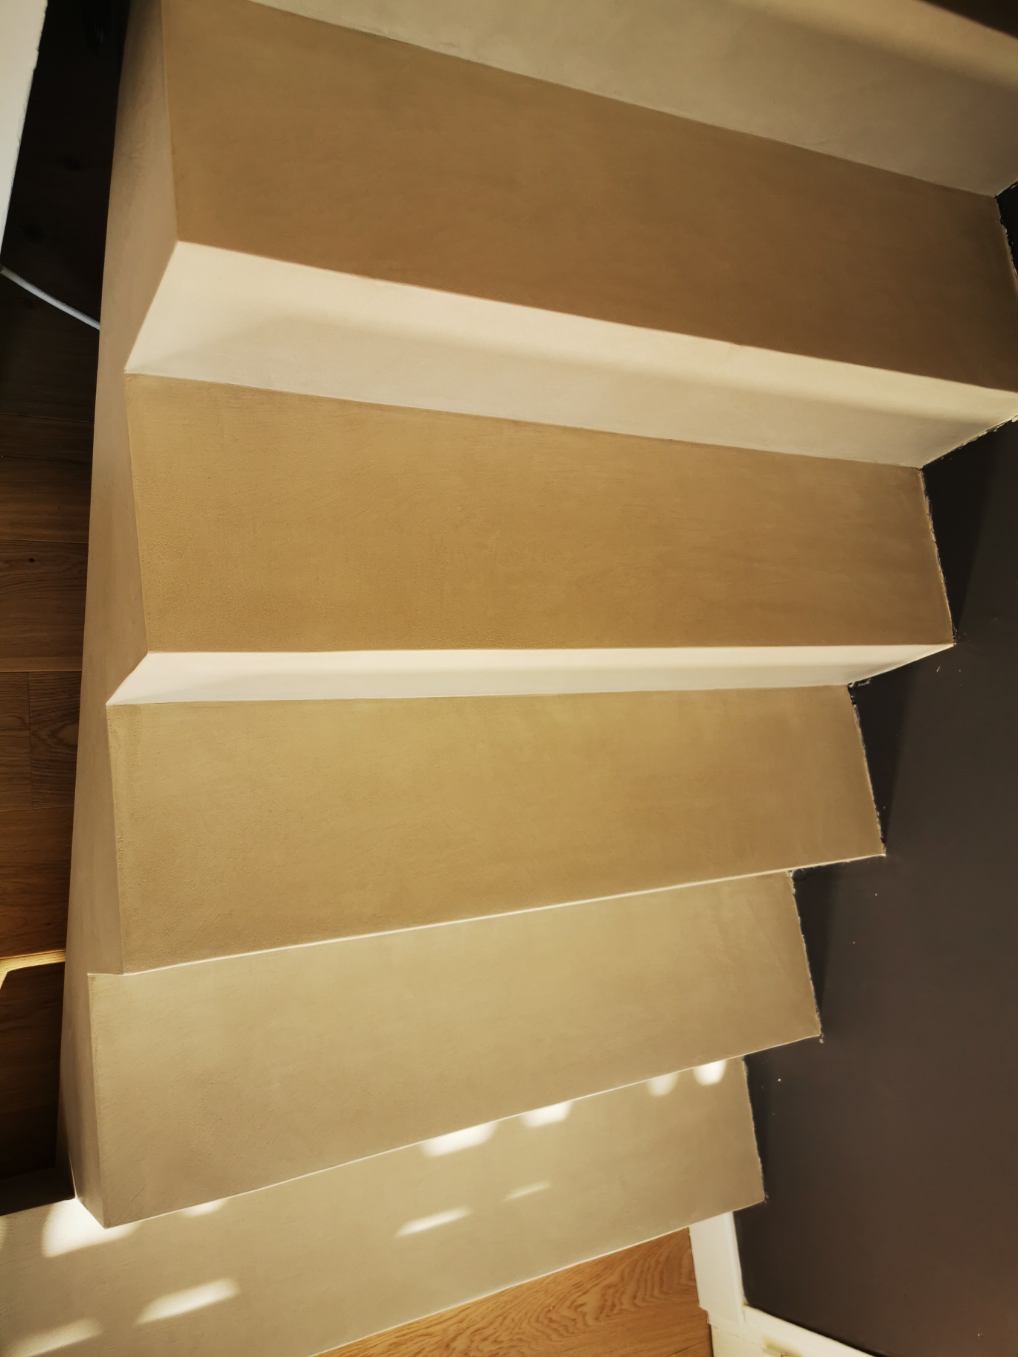 Transformer un escalier en béton brut en un bel escalier en finition béton lissé.